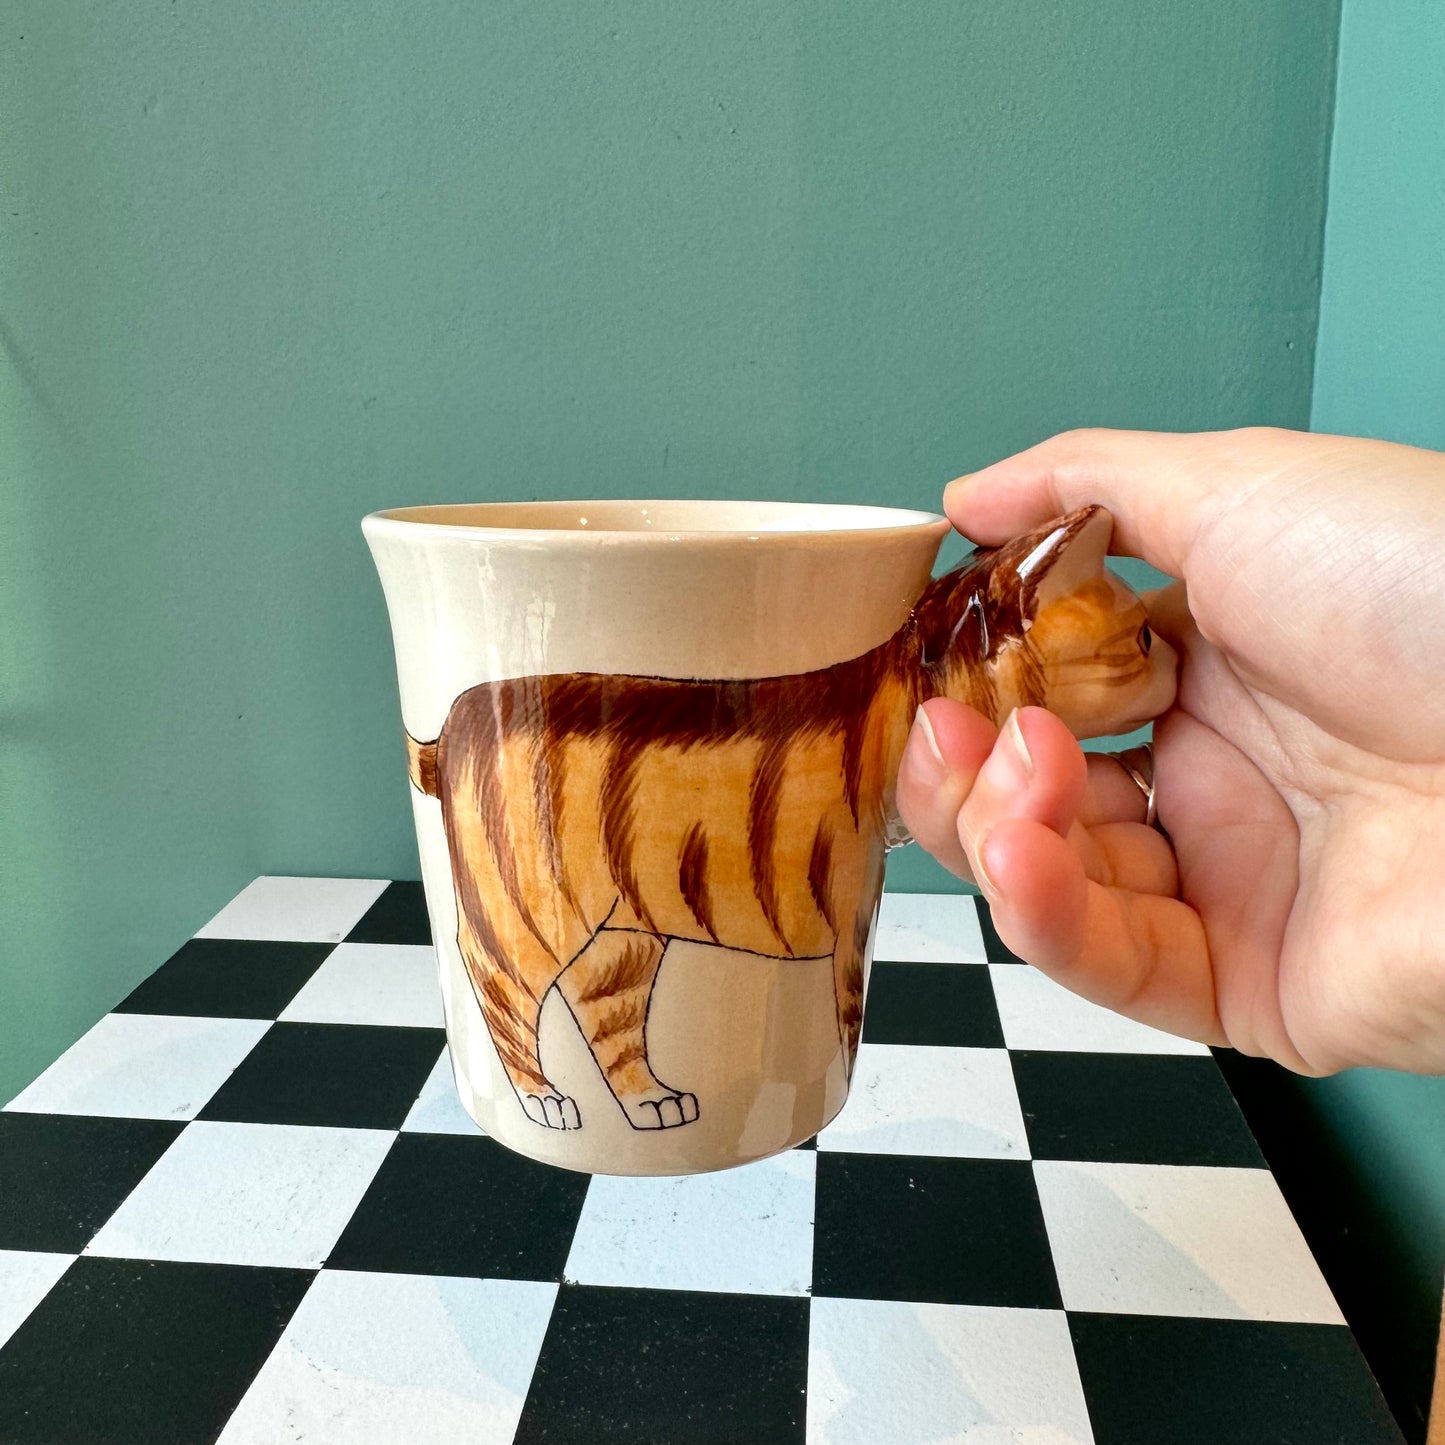 Orange Tabby Cat Ceramic Mug